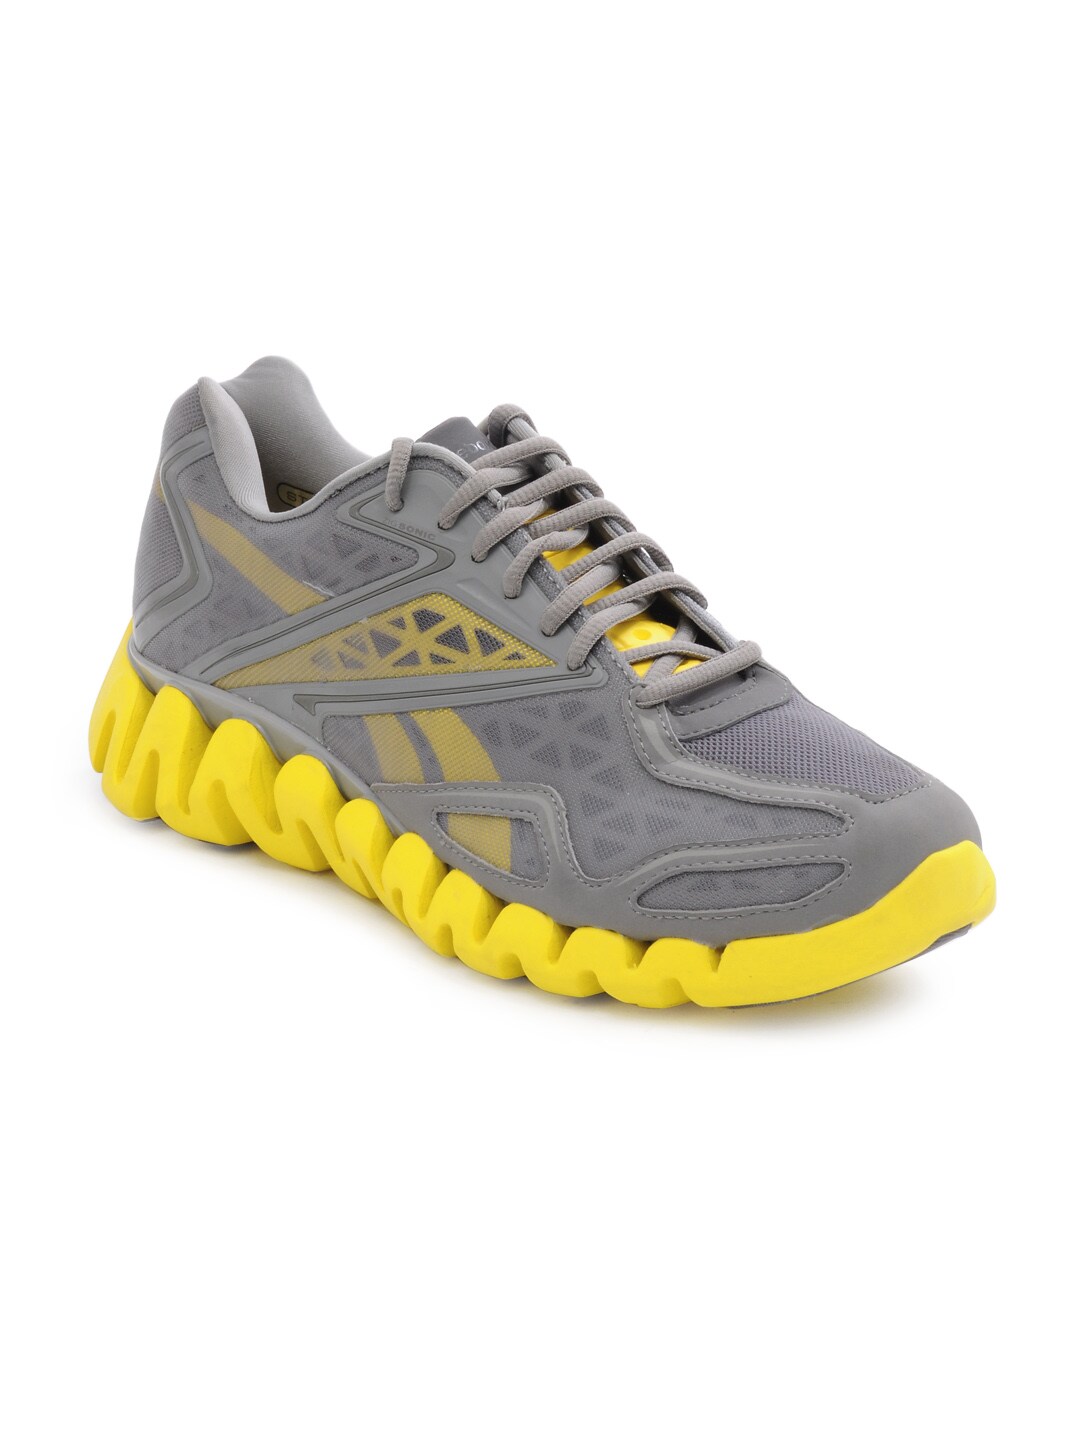 Reebok Men's ZigSonic Grey & Yellow Shoe